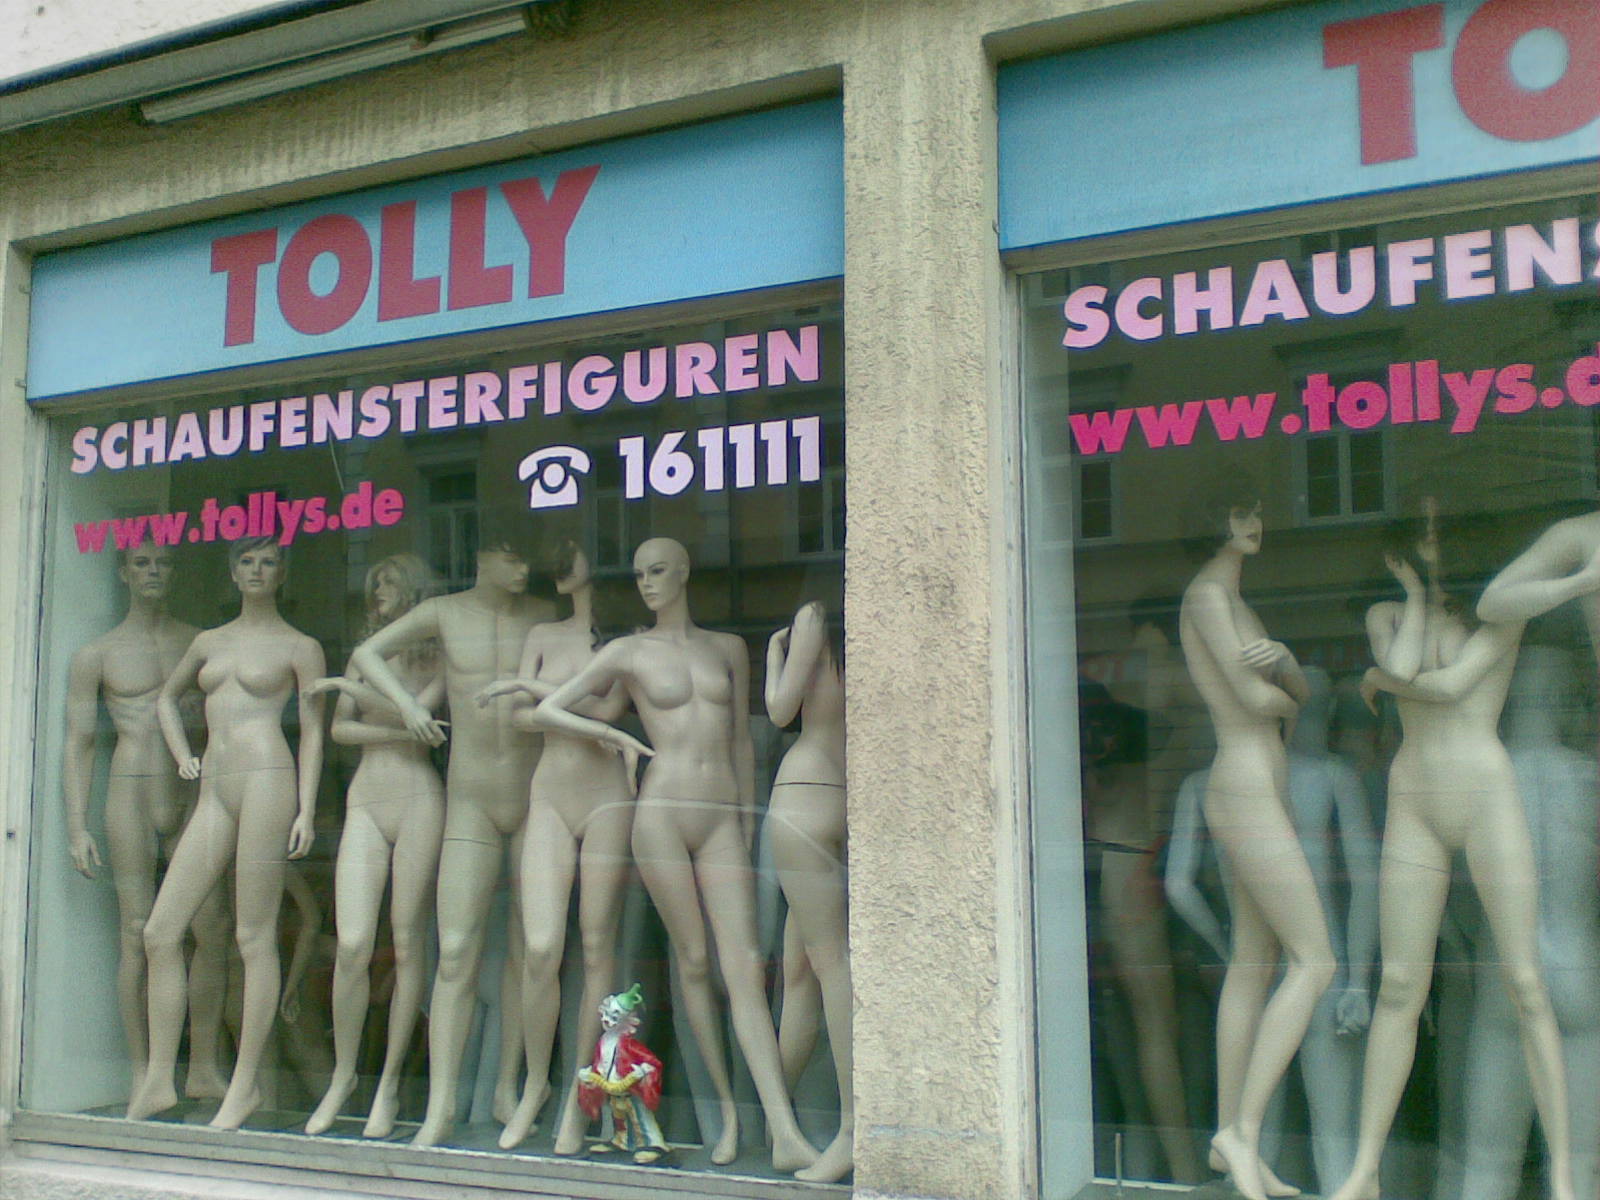 Bild 1 TOLLY's Schaufensterfiguren Handels GmbH in München